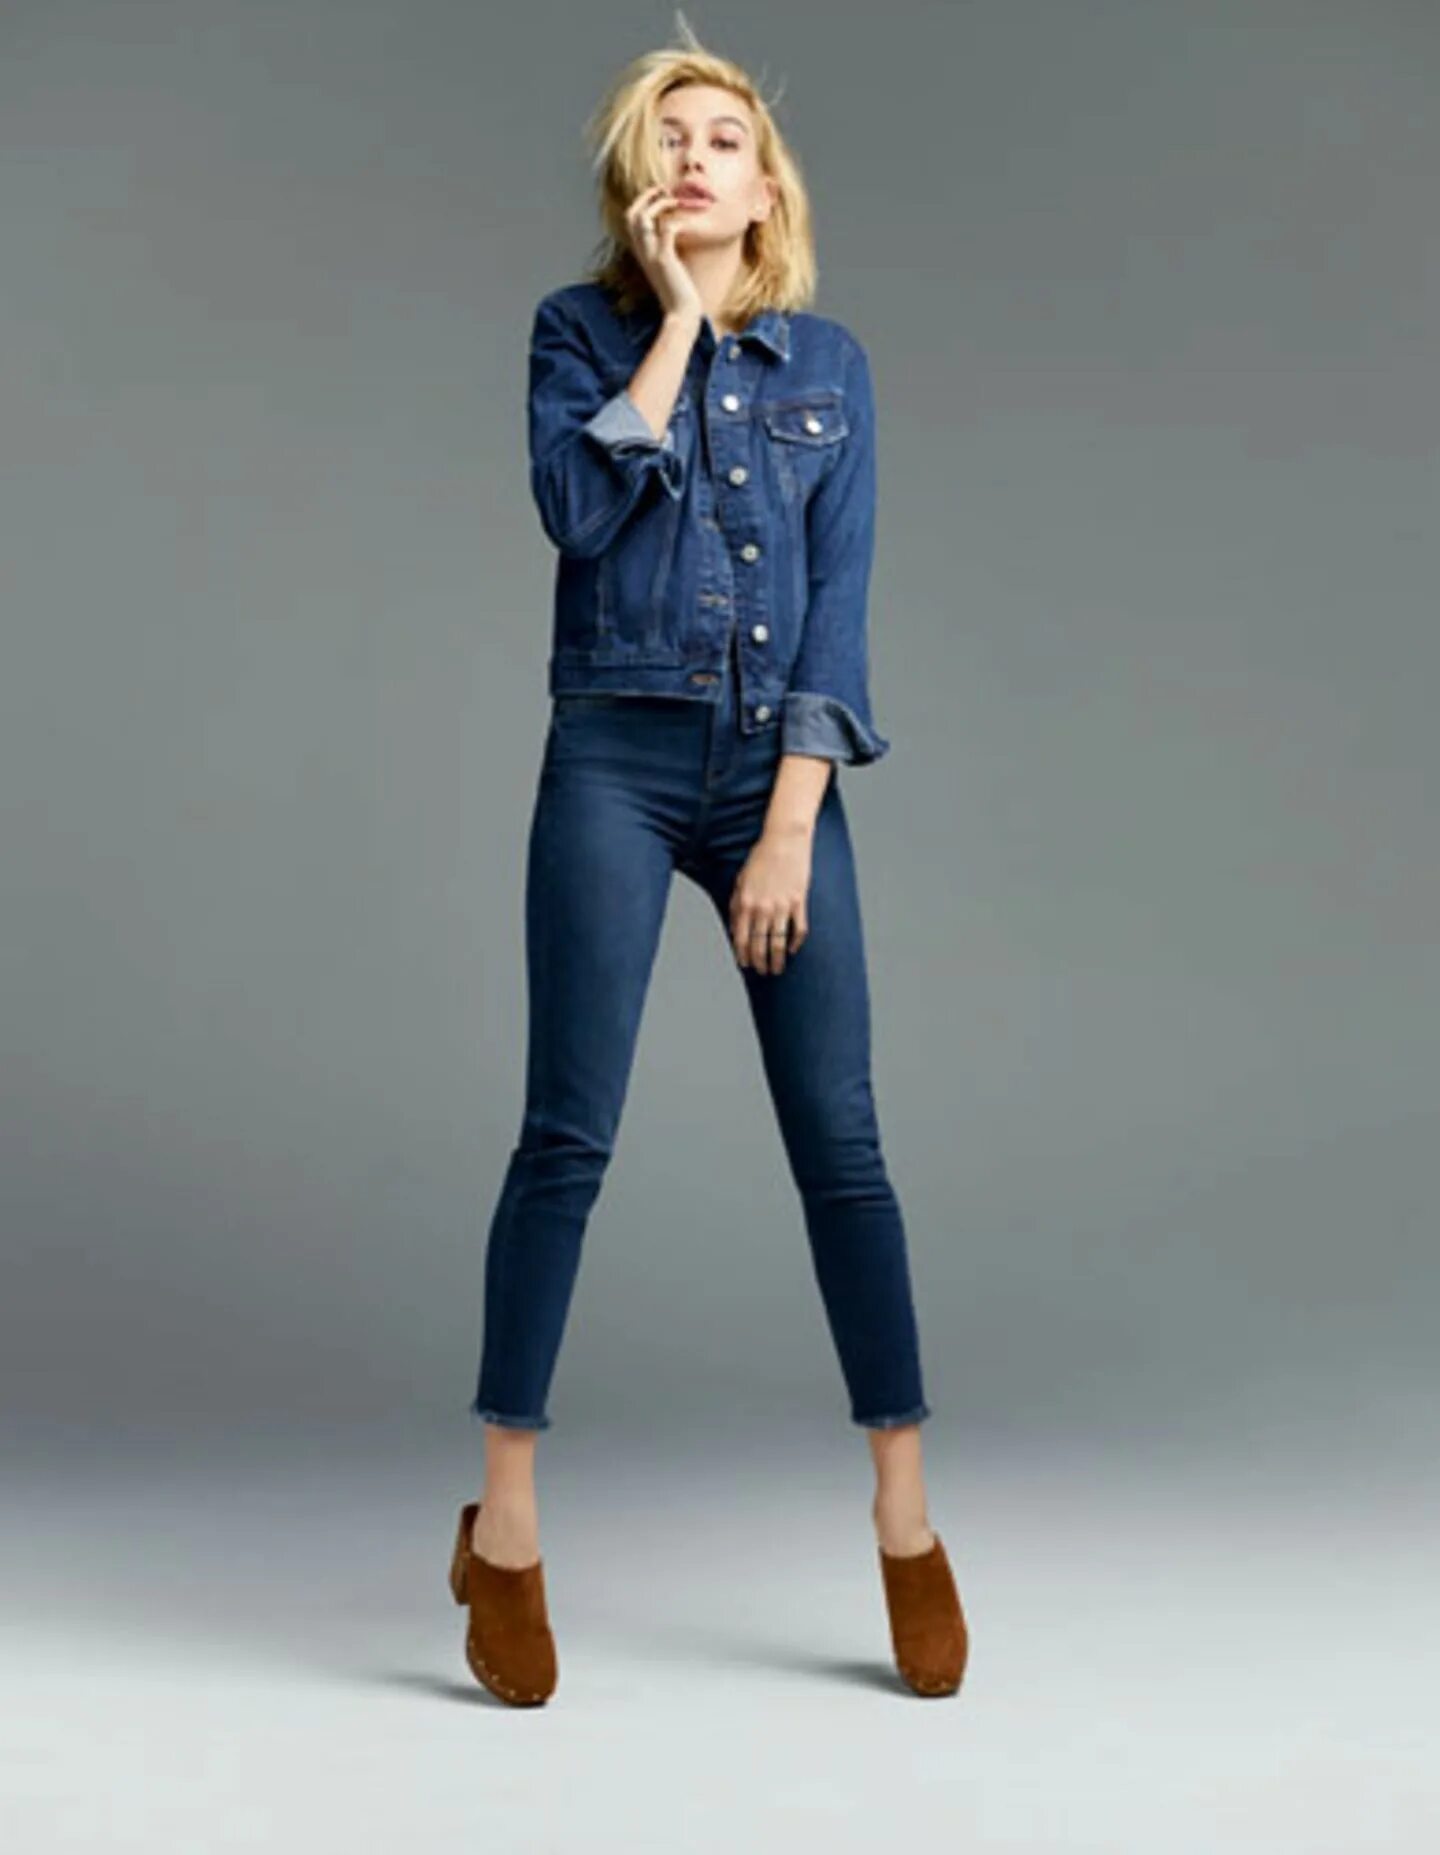 Джинсы collection. Модели в джинсовой одежде. Новая коллекция джинс. Джинсовый костюм женский. Новая коллекция джинсов и джинсовок.